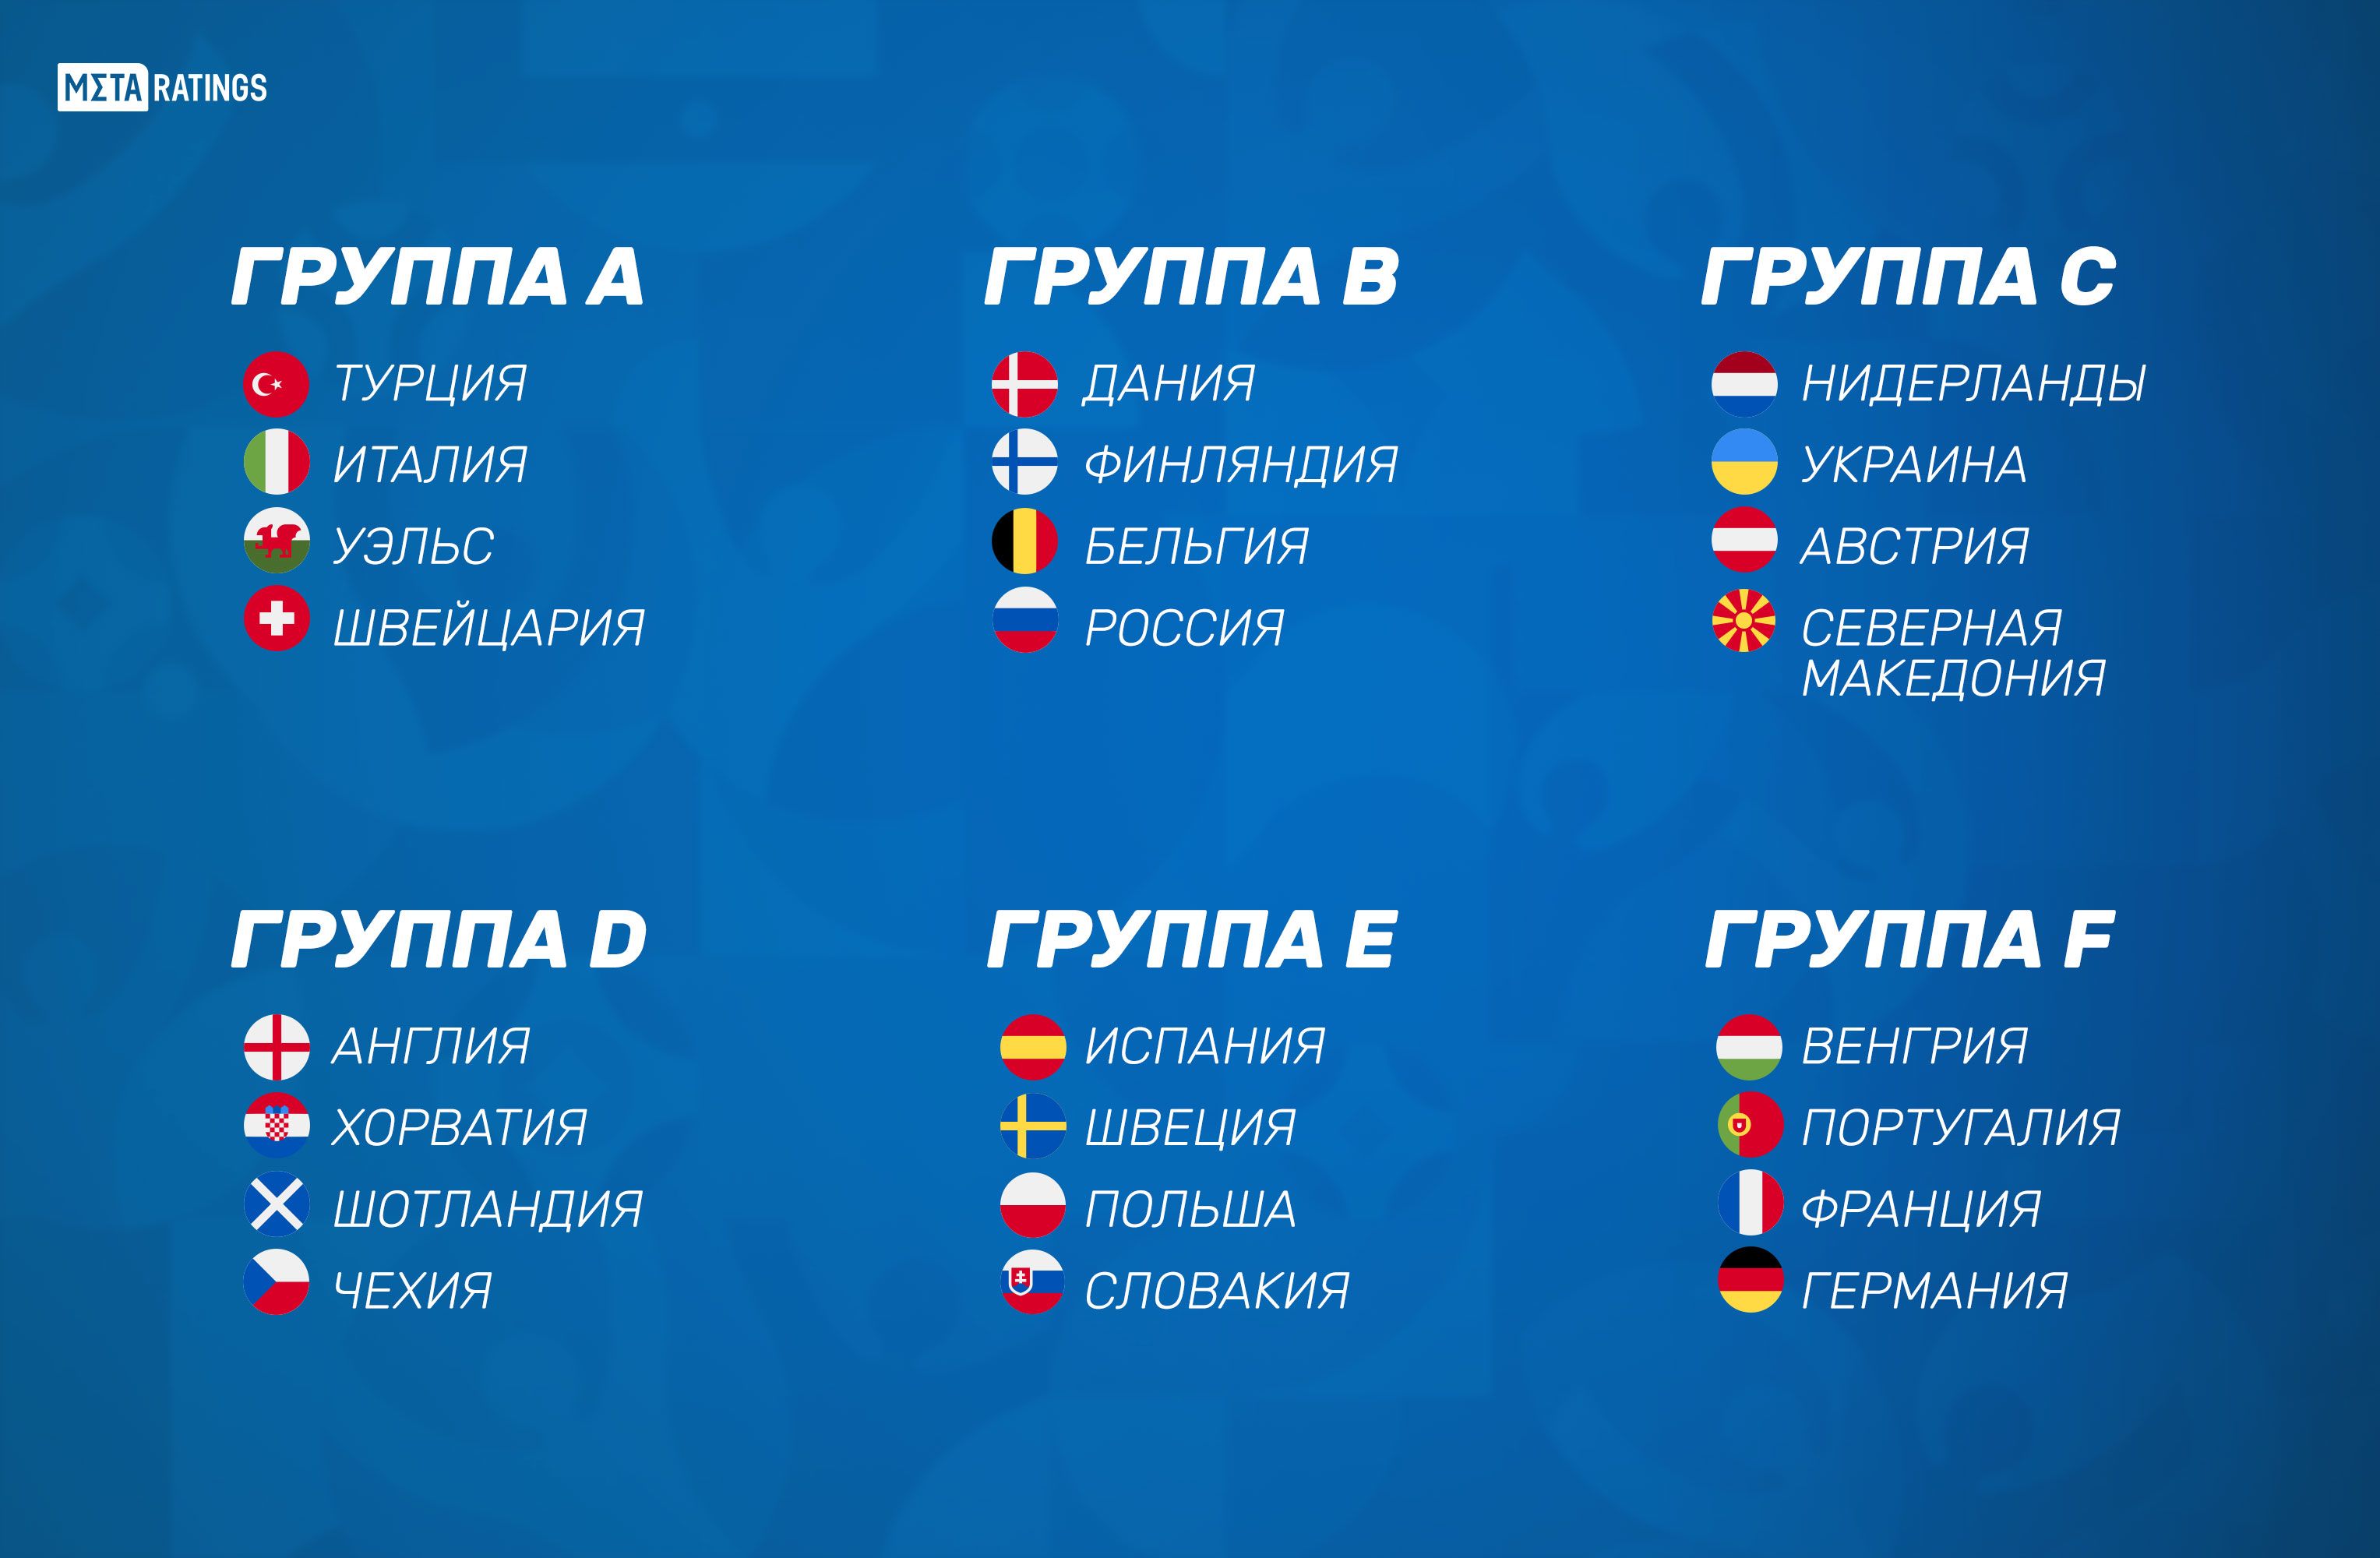 Турнирная австрии. Турнирная таблица евро 2020. Таблица чемпионата Европы по футболу 2020. Группы евро 2020 2021. Евро 2020 по футболу турнирная таблица.